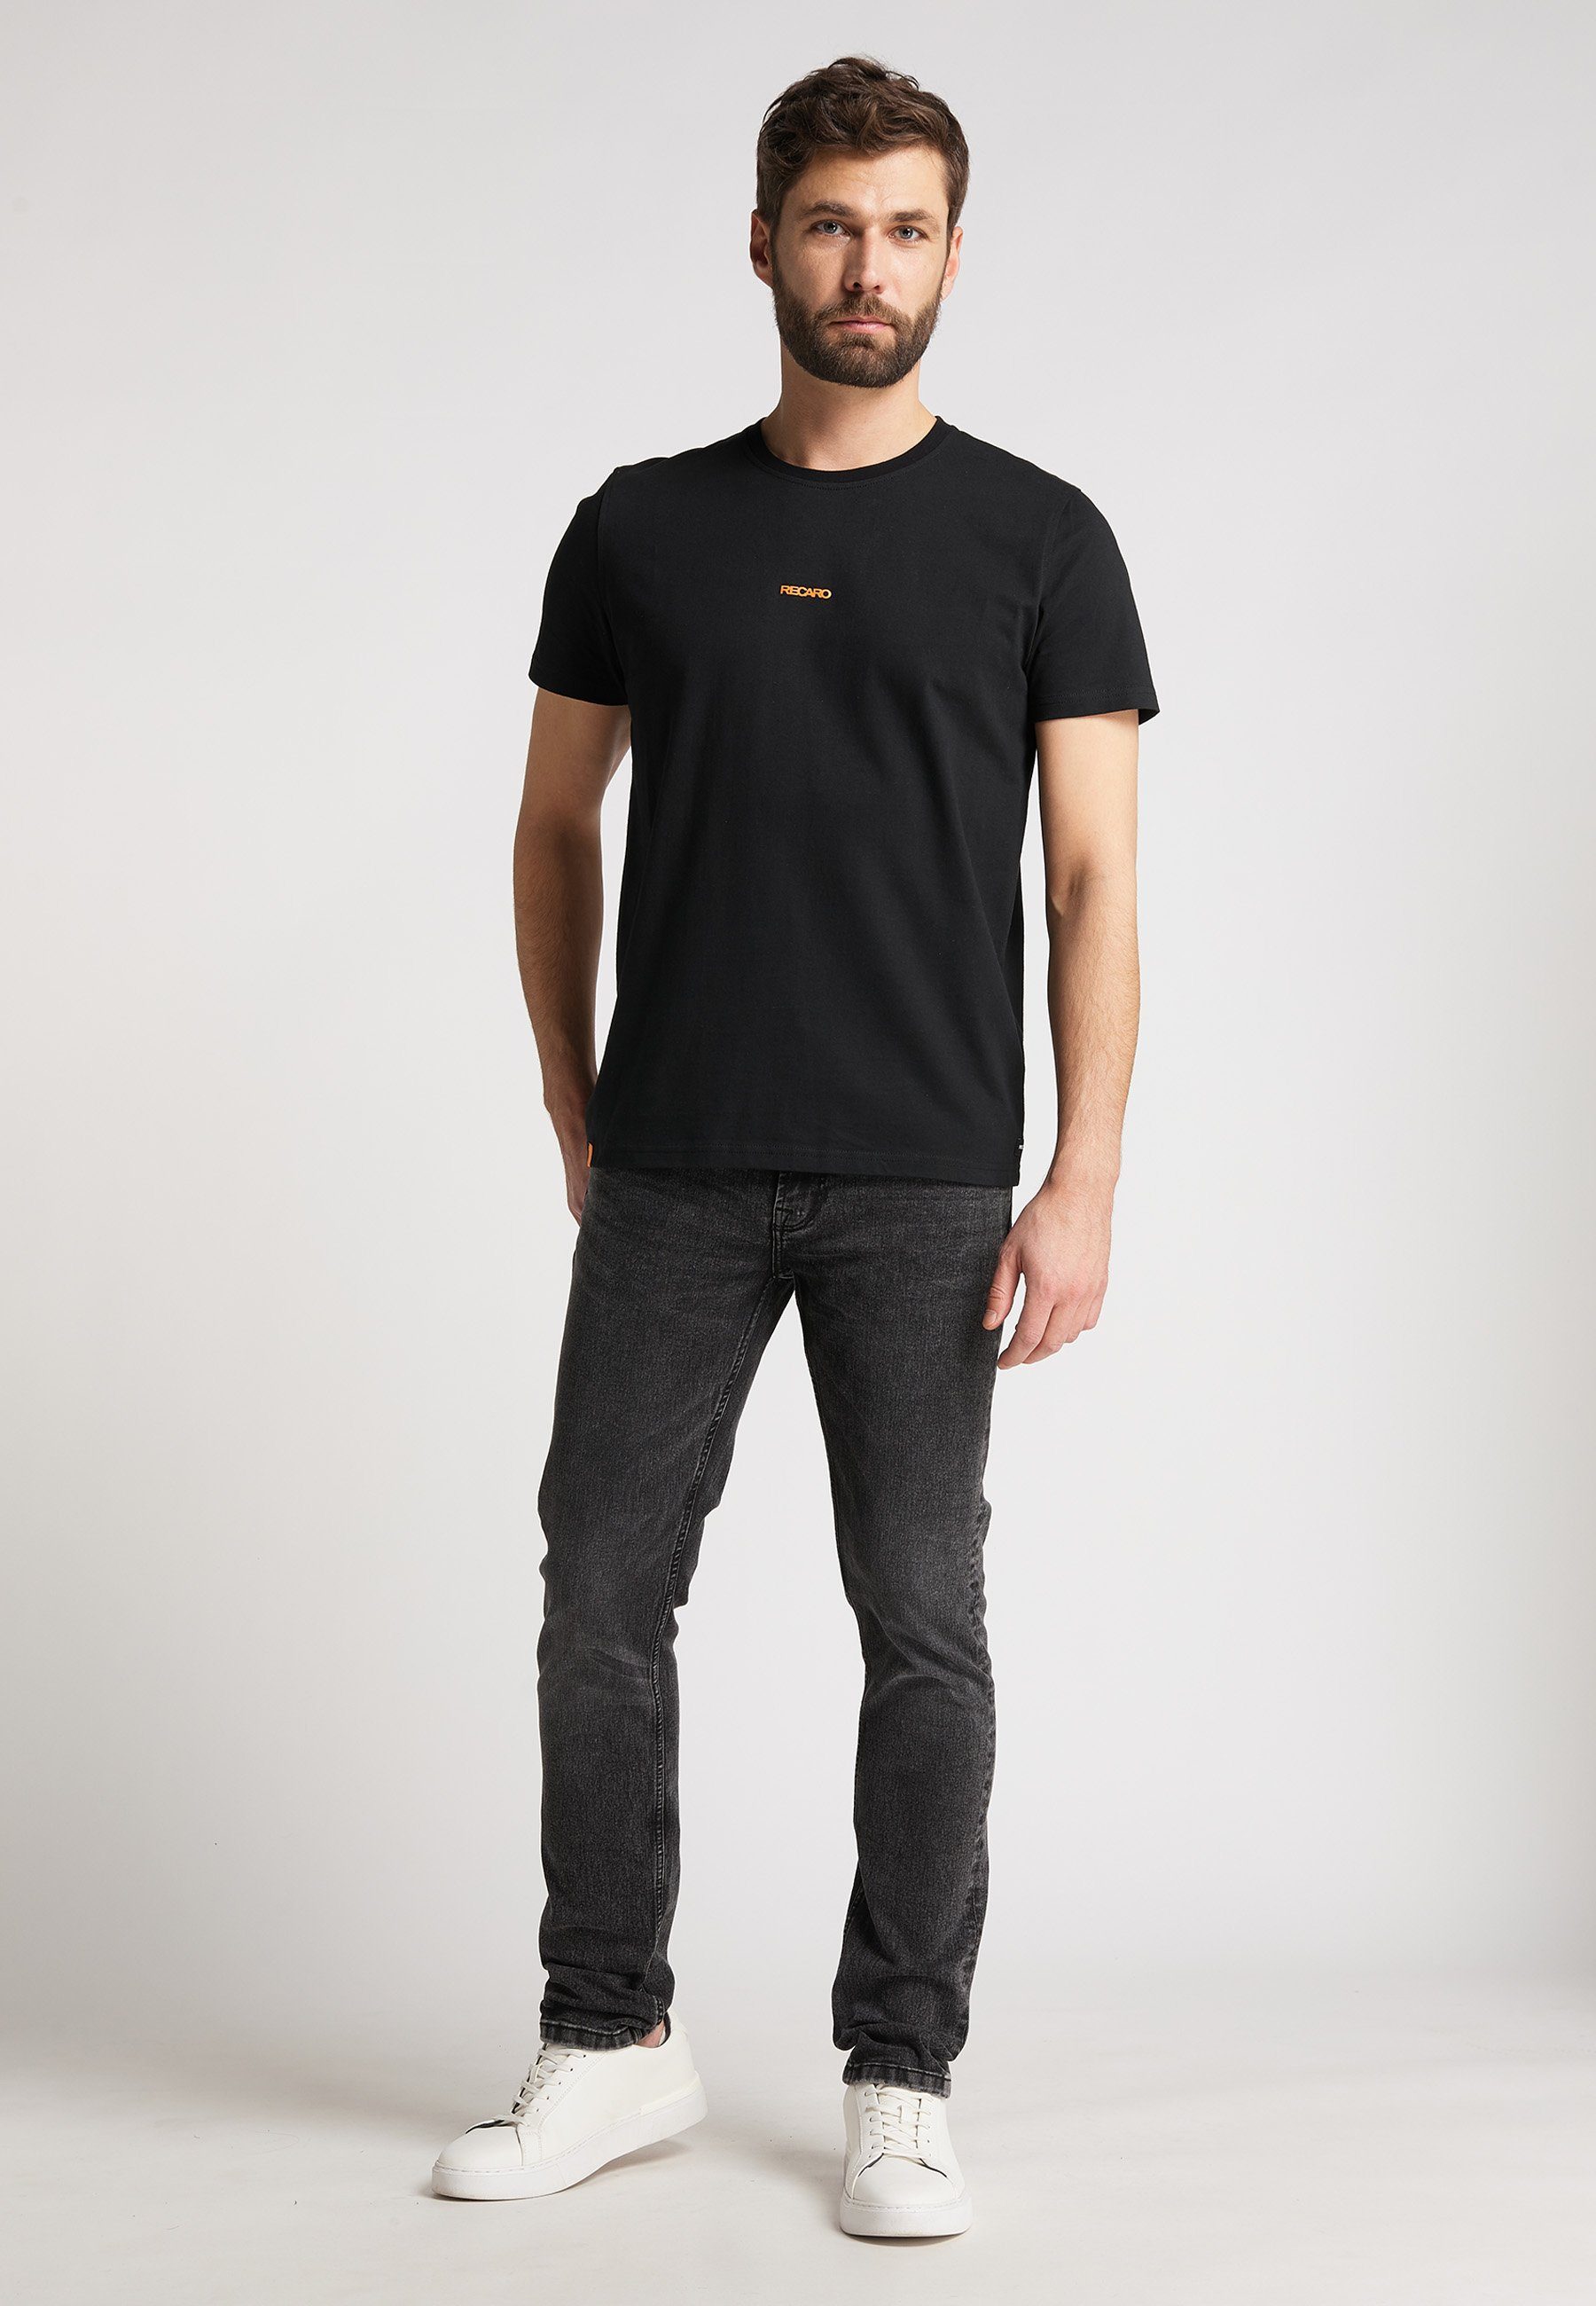 Herren Shirts RECARO T-Shirt RECARO T-Shirt Backprint, Herren Shirt, Rundhals, 100% Baumwolle, Made in Europe